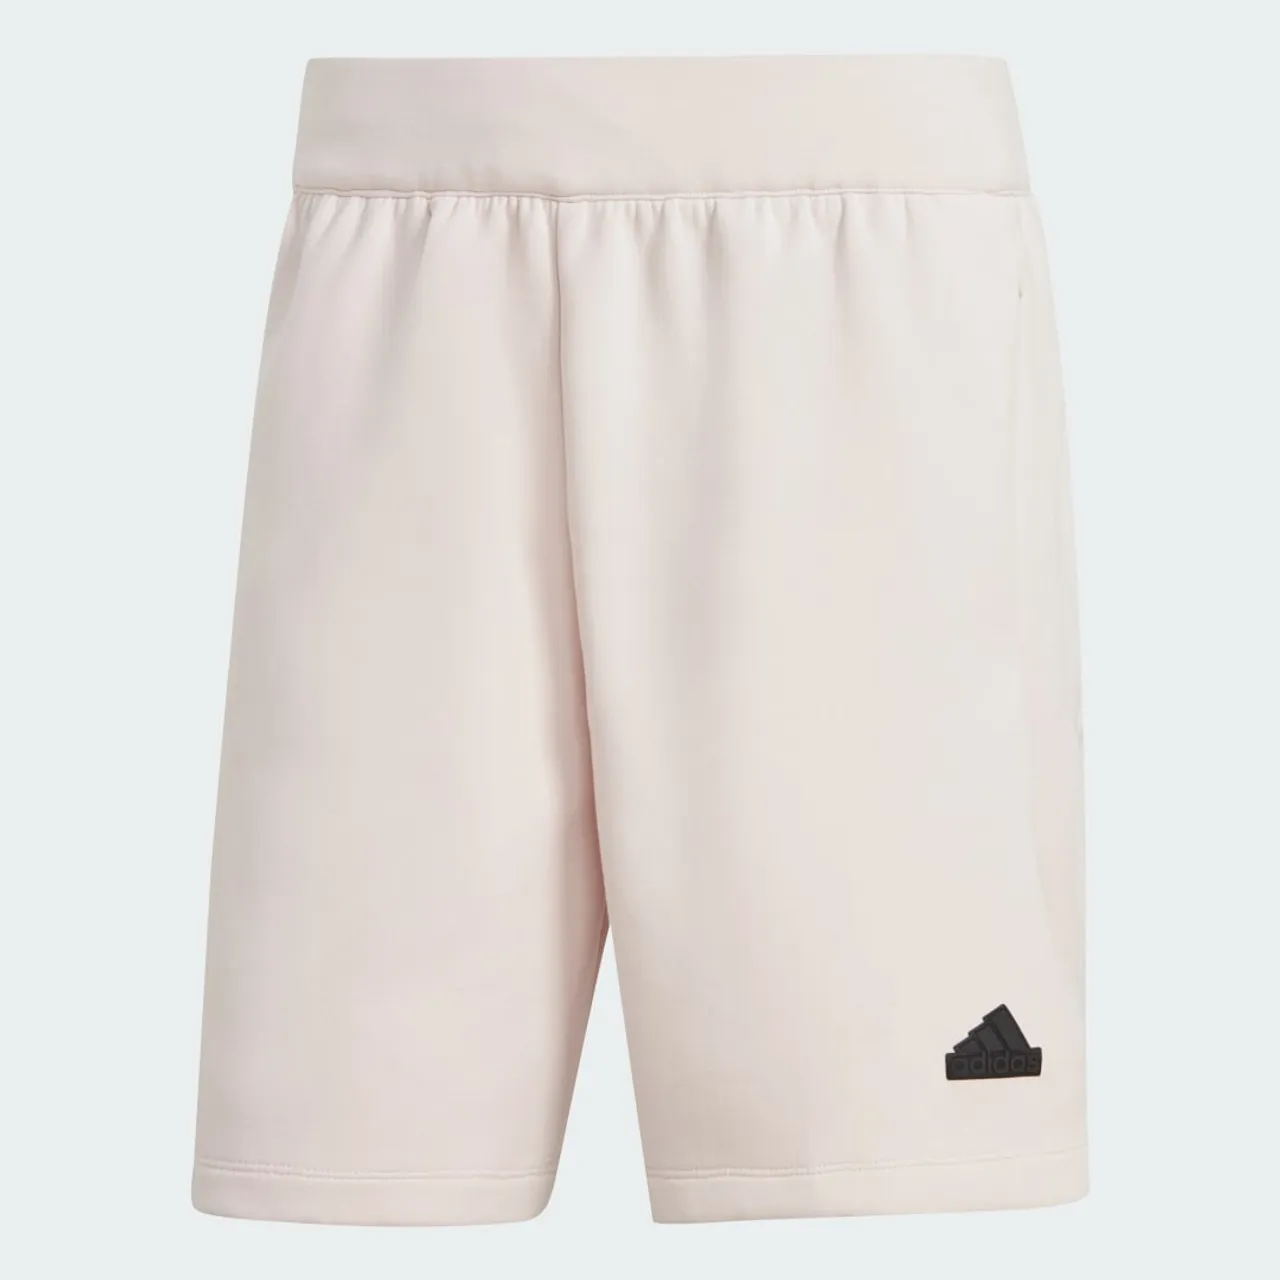 Z.N.E. Premium Shorts